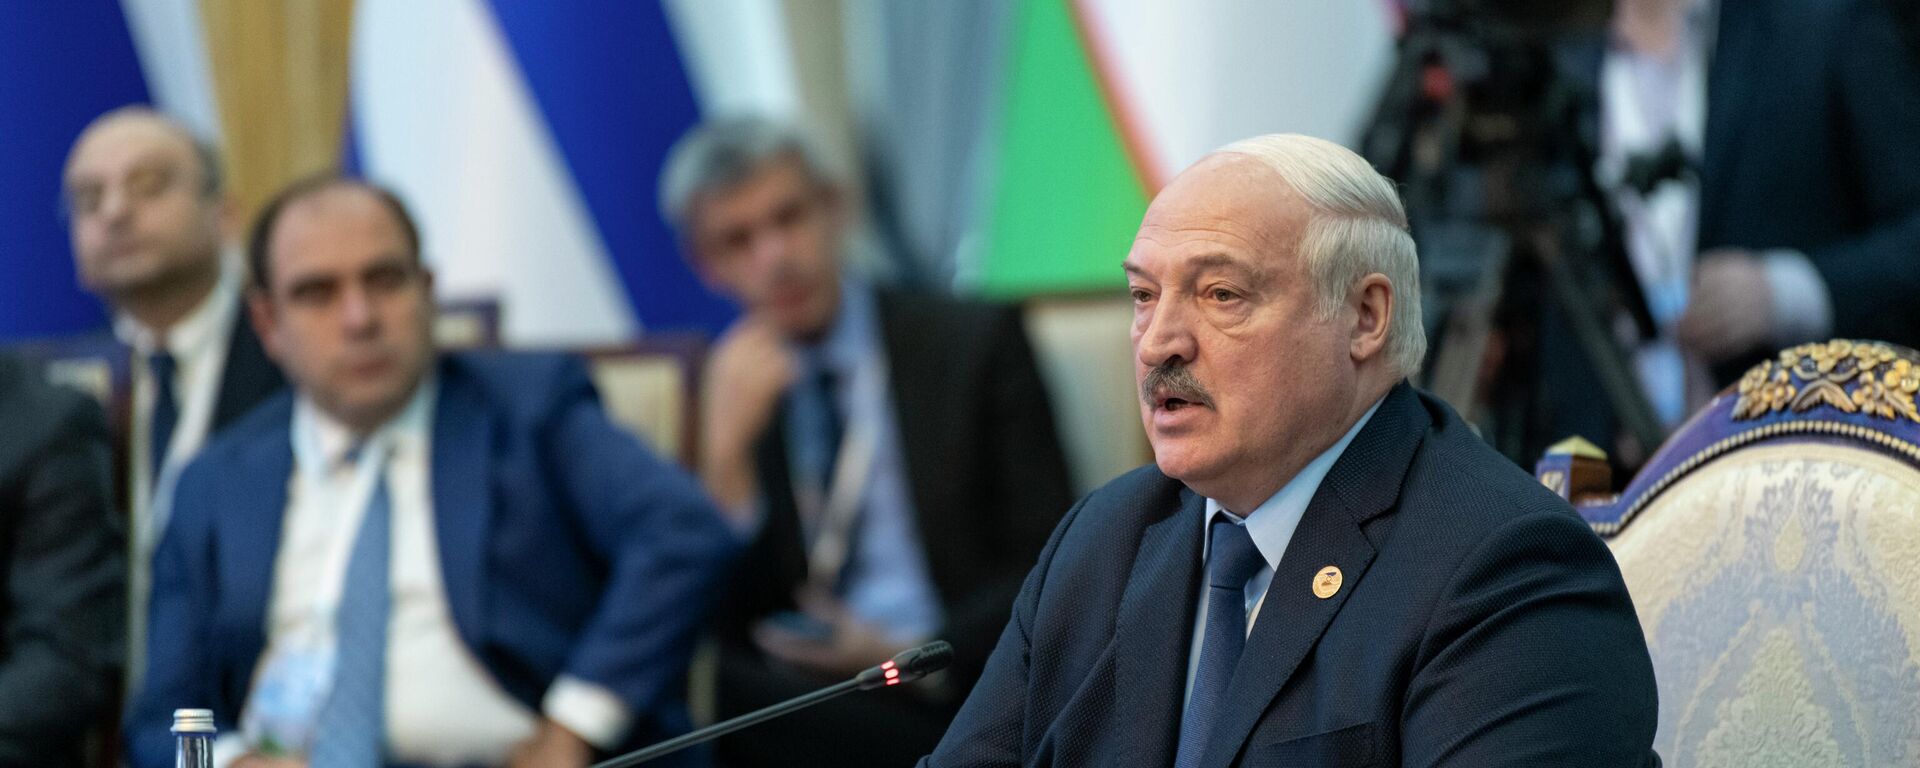 Президент Беларуси Александр Лукашенко выступает с речью во время саммита ЕАЭС в Бишкеке. 09 декабря 2022 года - Sputnik Кыргызстан, 1920, 09.12.2022